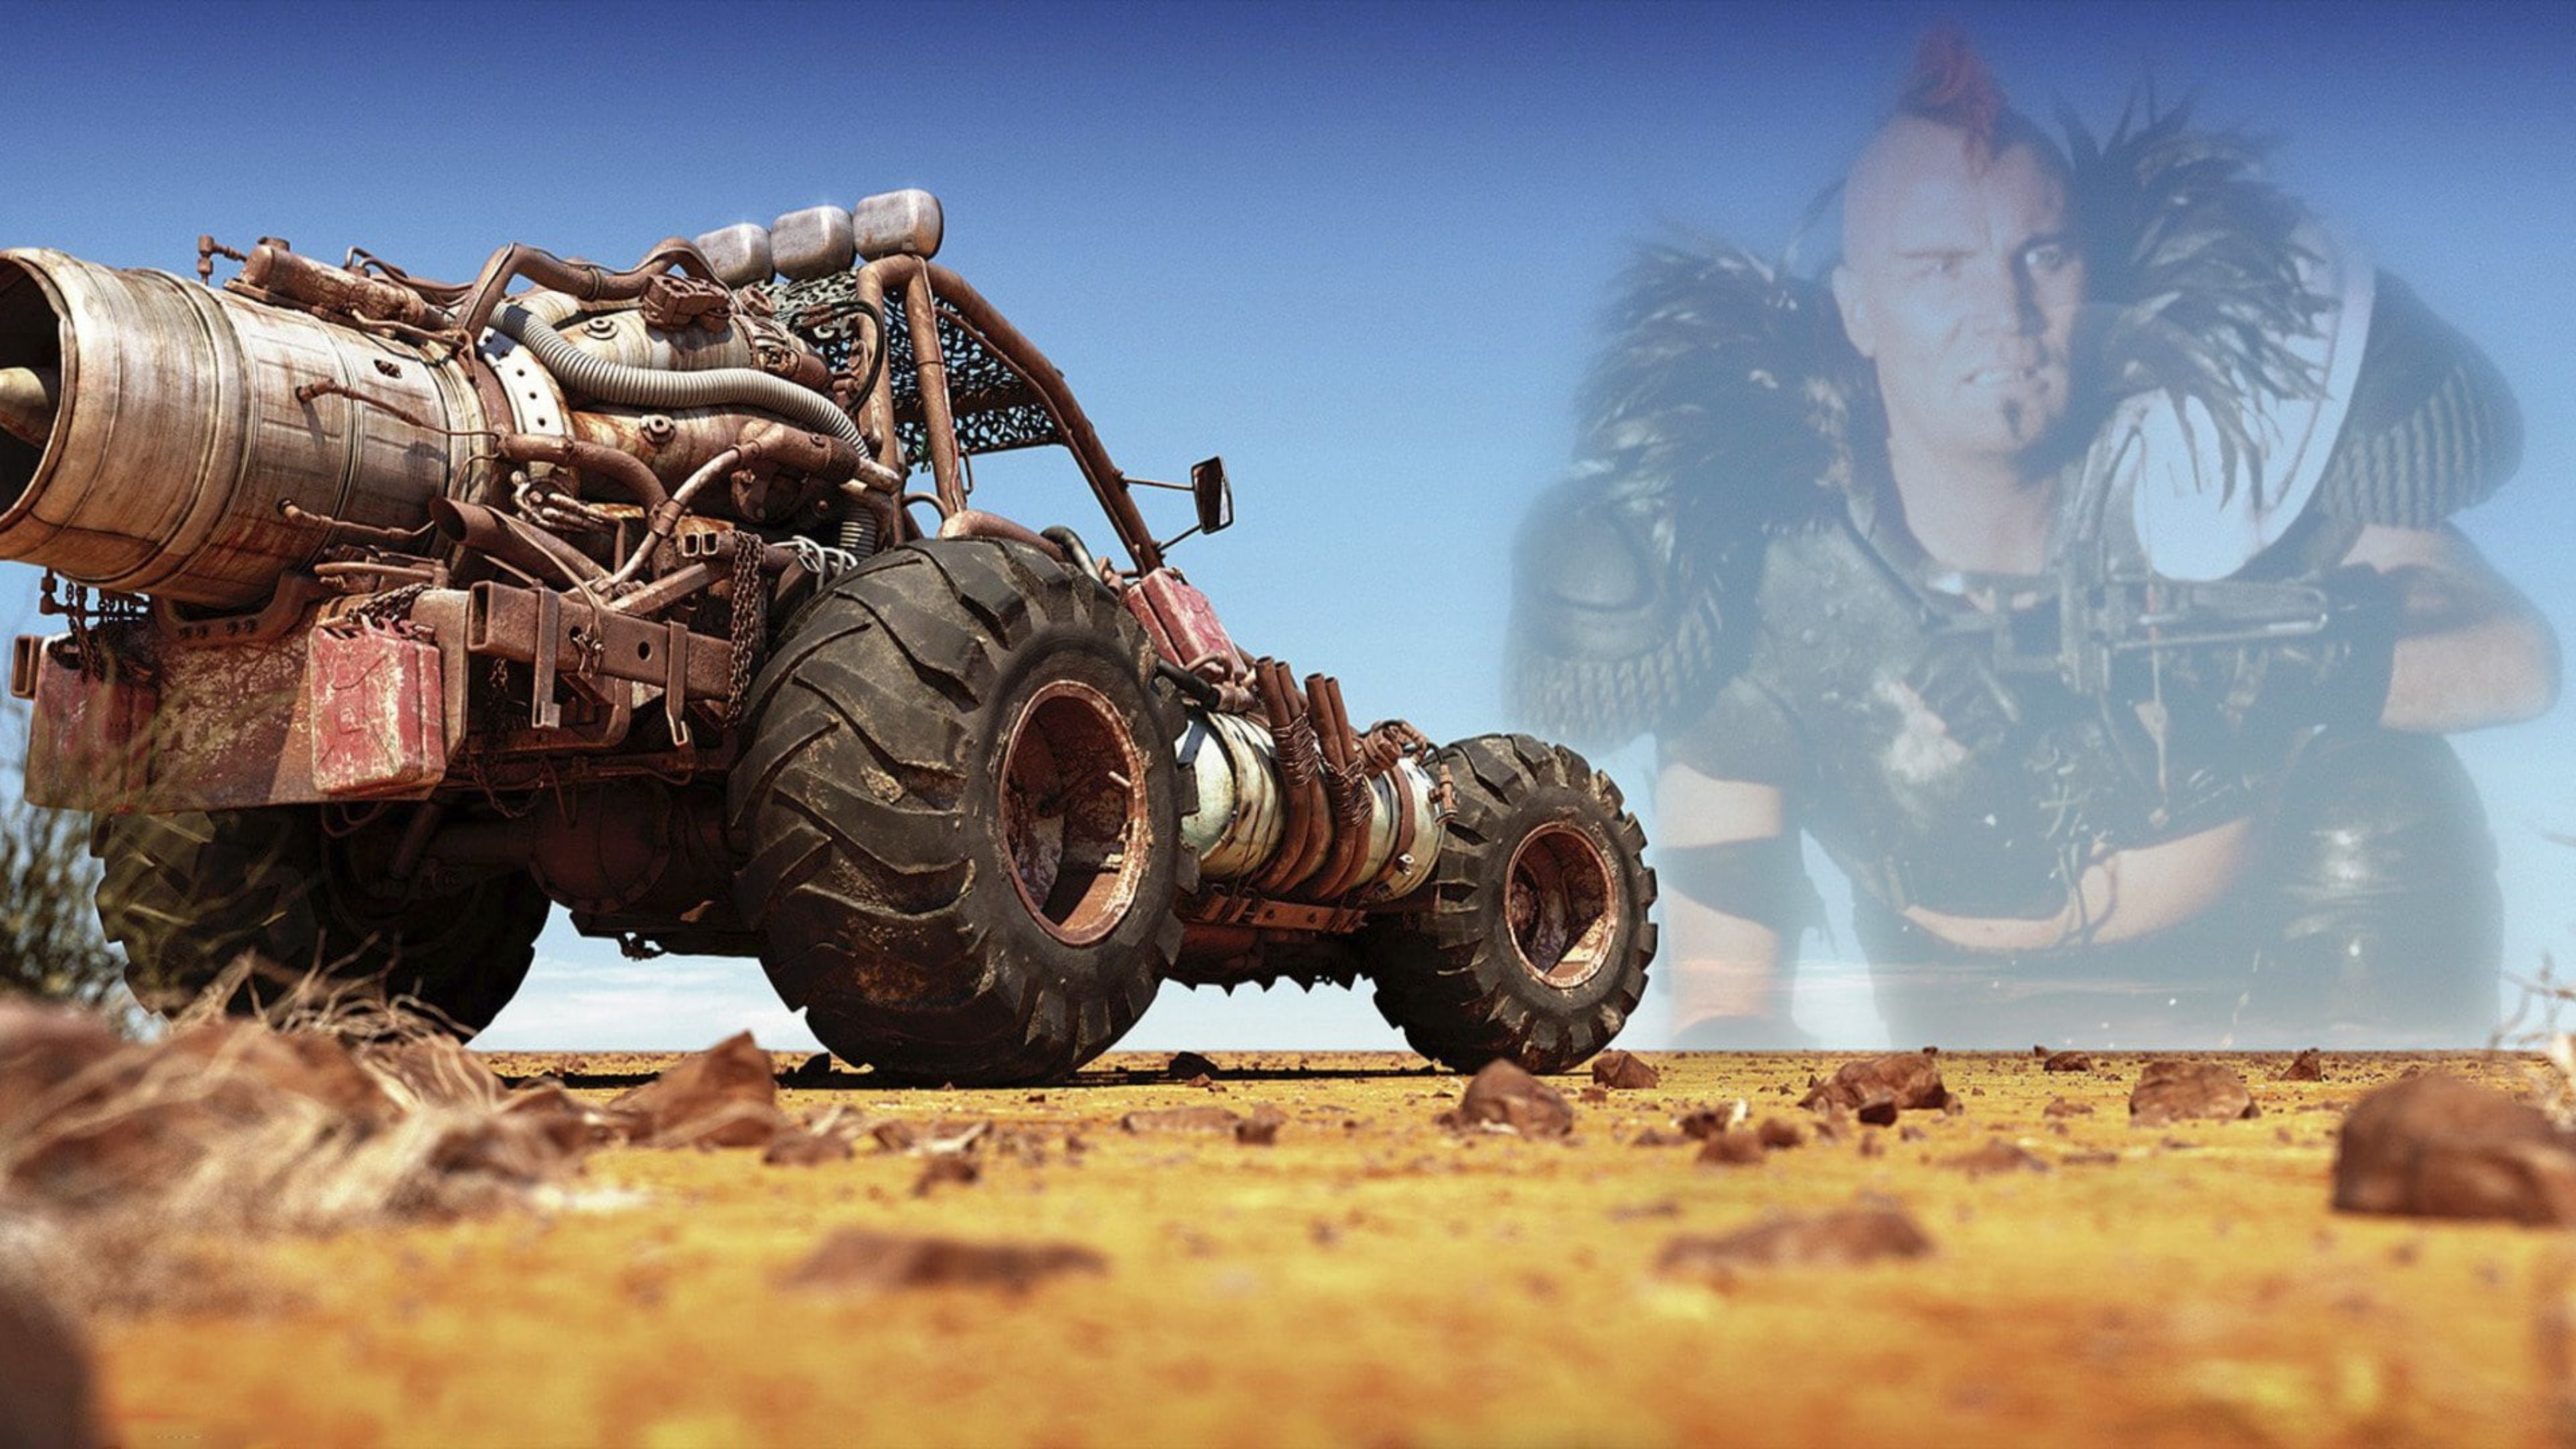 Papéis de Parede Mad Max 2 The road warrior